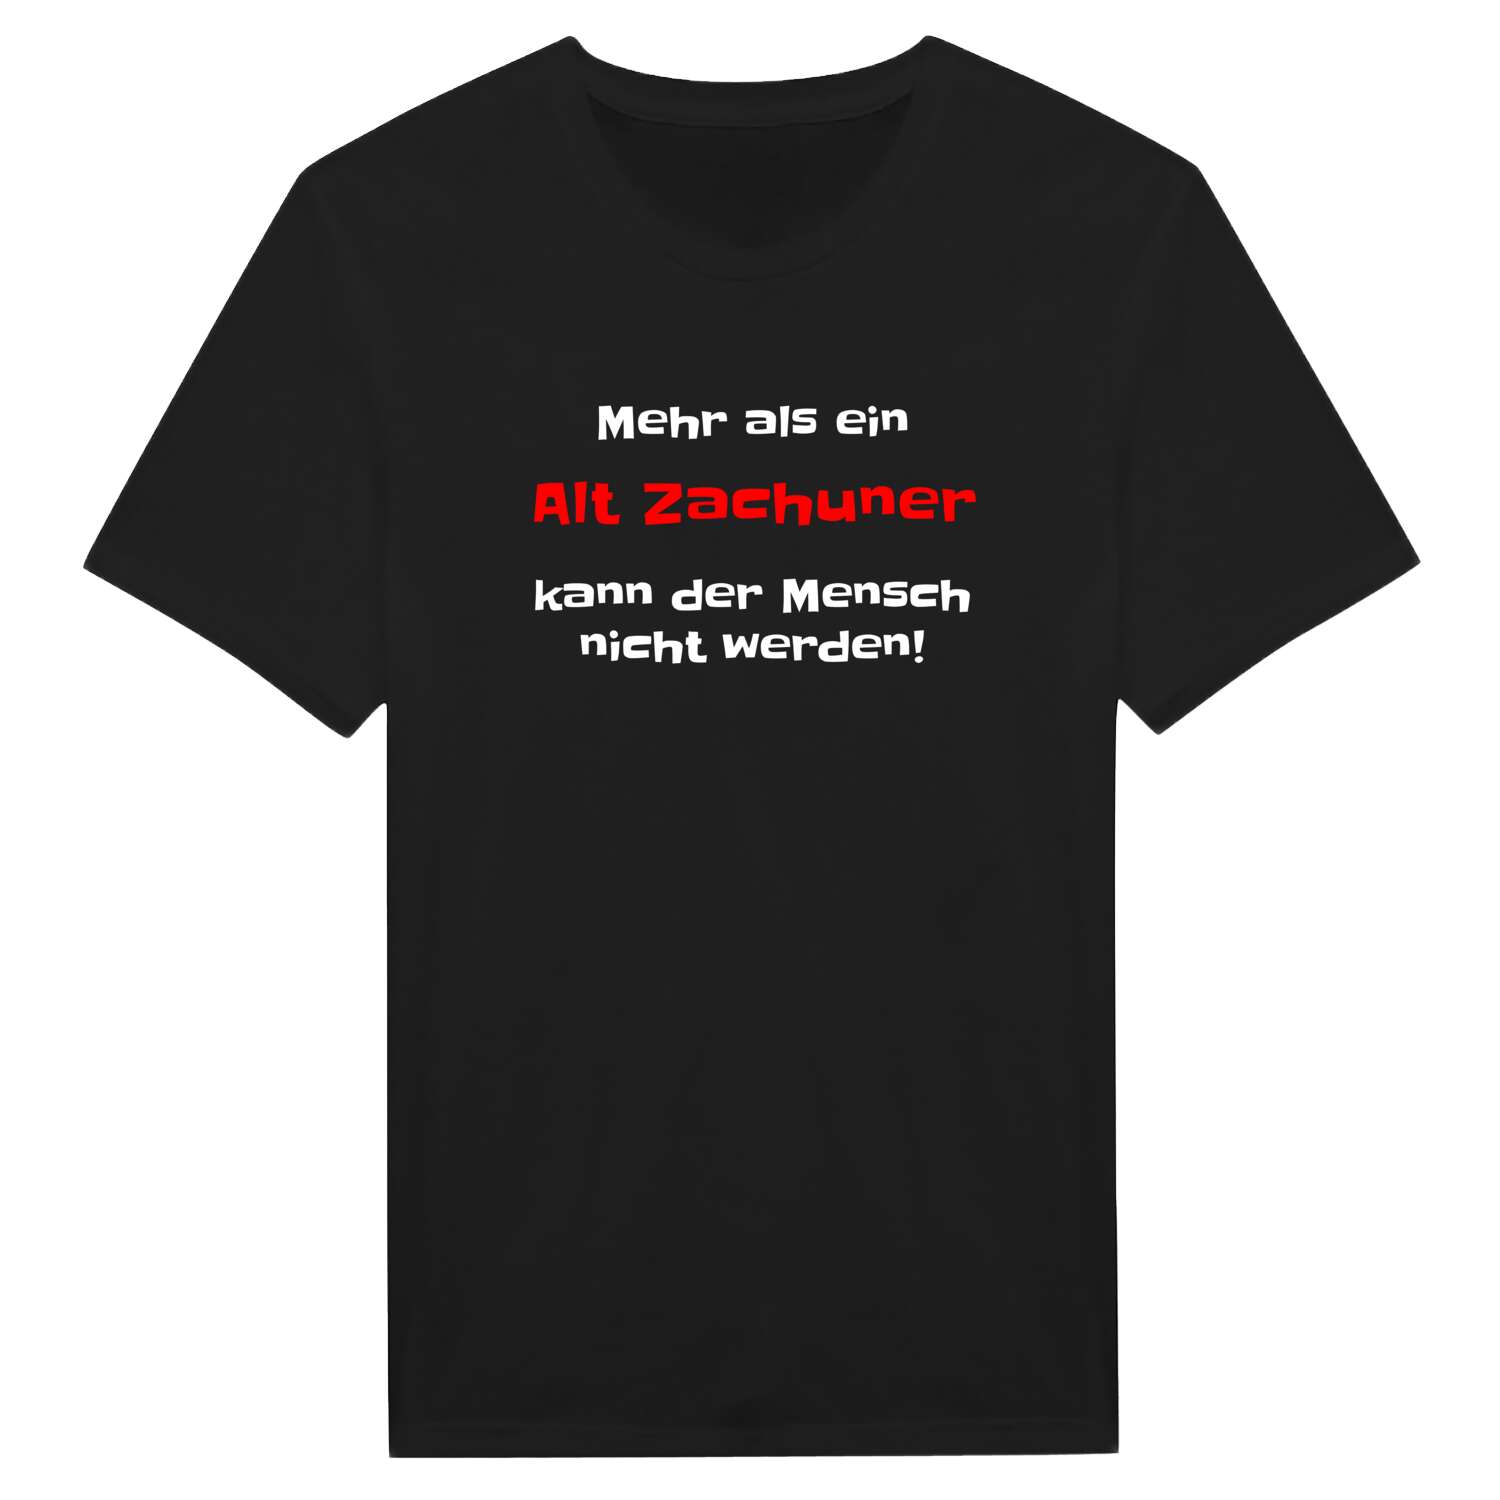 Alt Zachun T-Shirt »Mehr als ein«